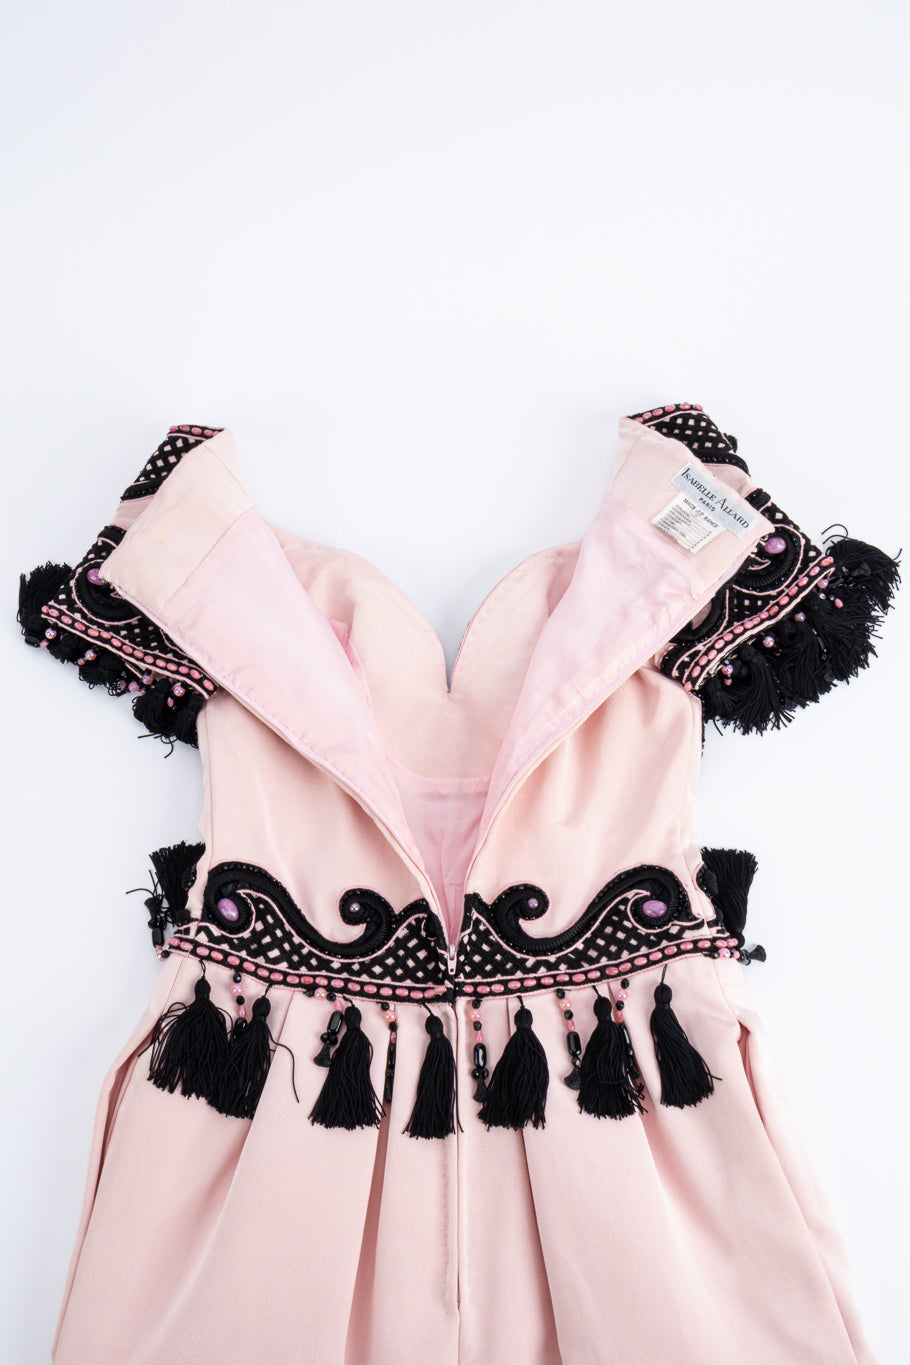 Decorative tassel dress by Isabelle Allard unzipped @recessla